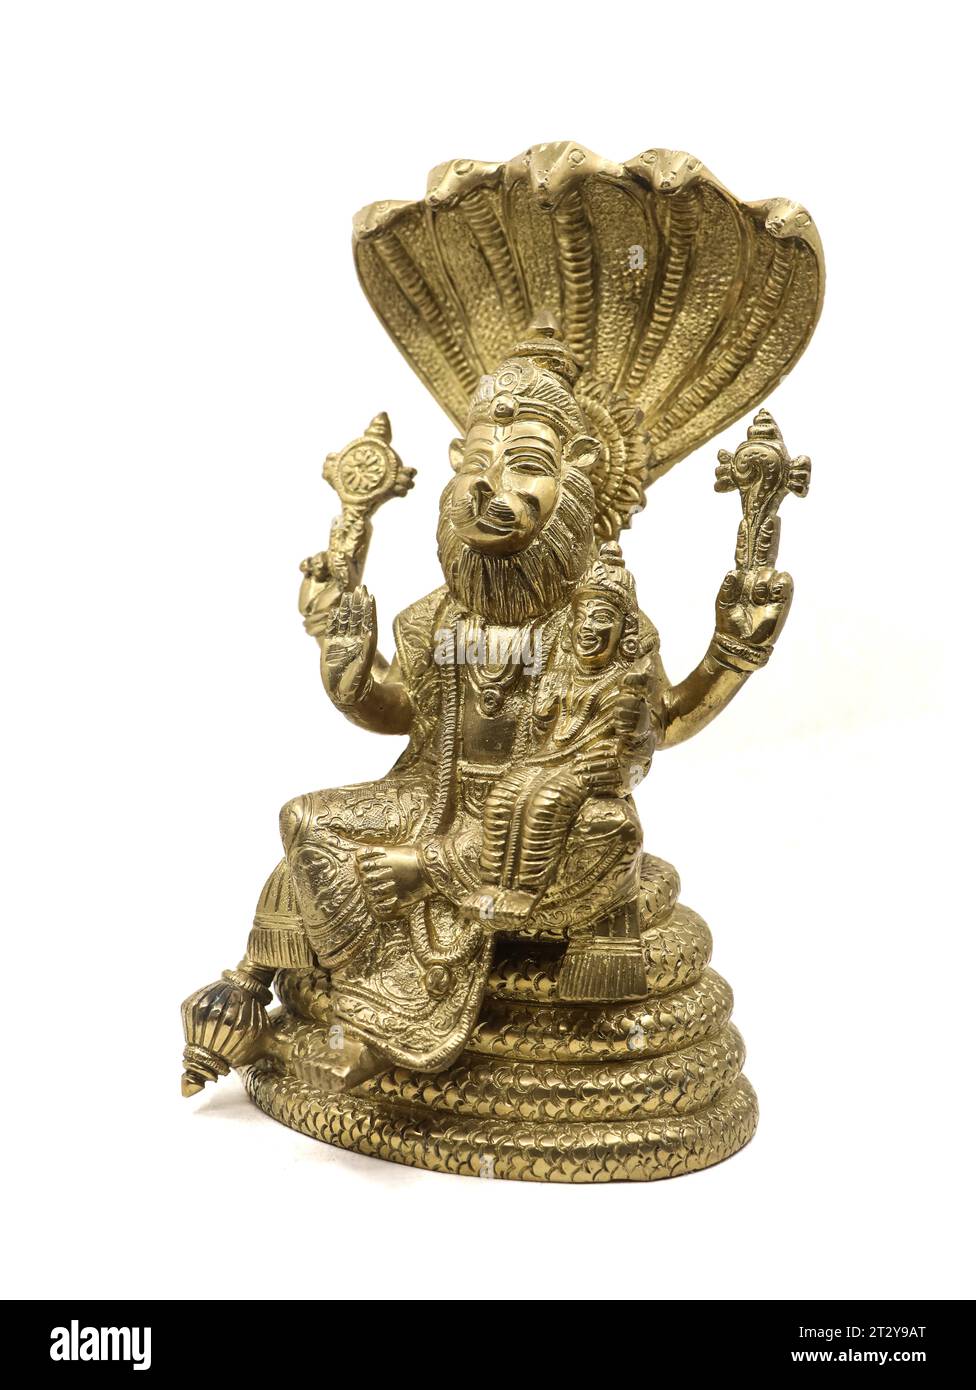 goldene Statue des Herrn vishnu Avatar, narasimha Löwe mit mehreren Händen auf einer Schlange mit mehreren Köpfen neben der Göttin lakshmi, isoliert Stockfoto